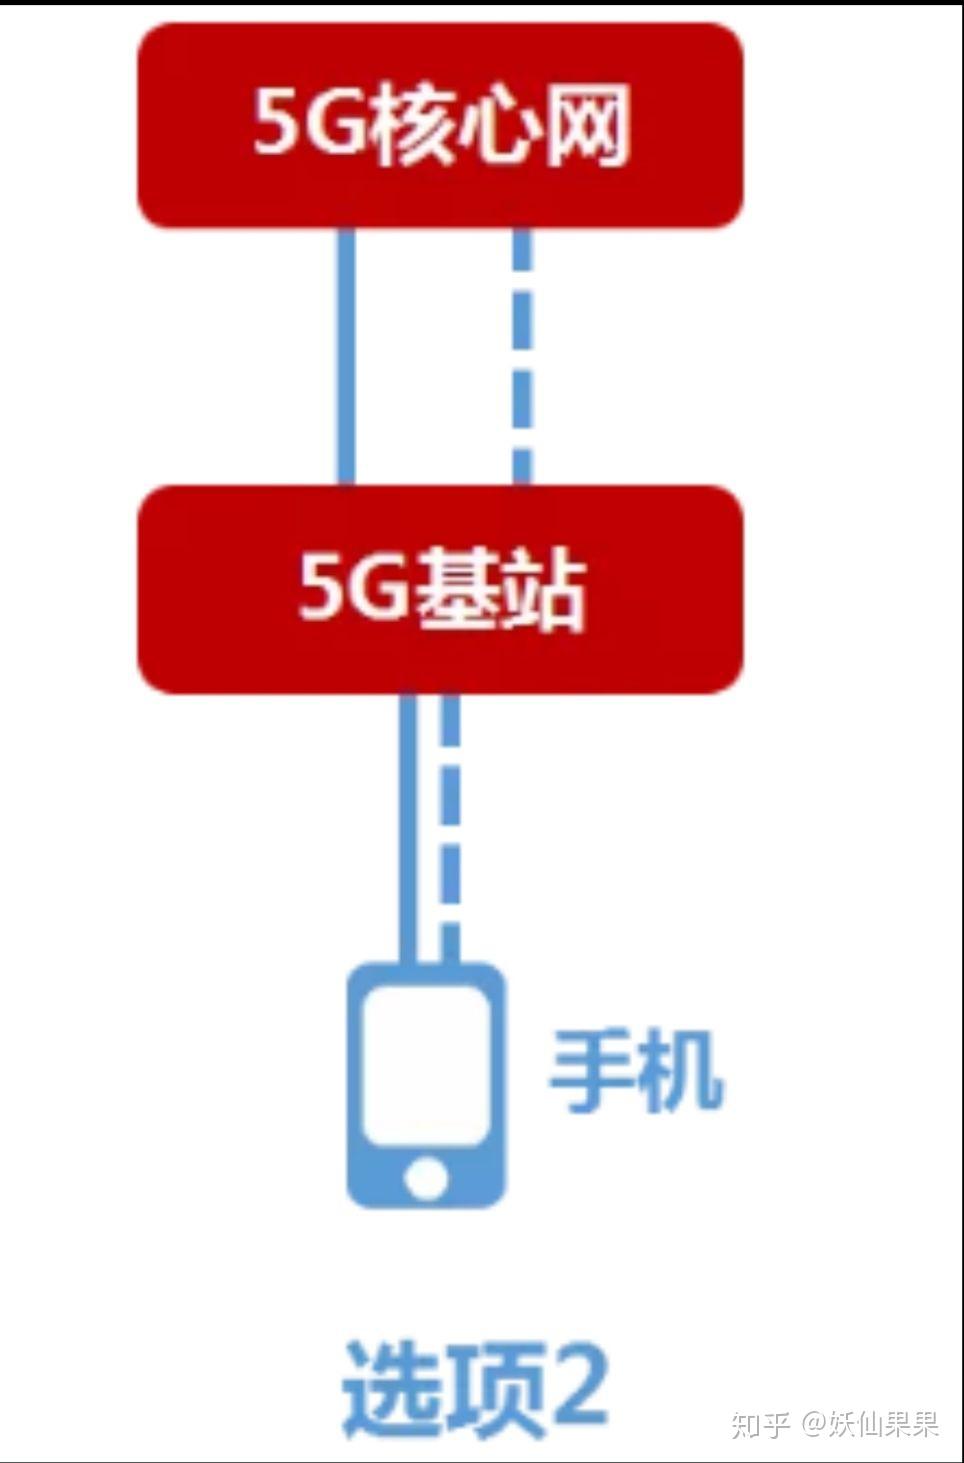 突然网络降级原因揭秘：5G 与 LTE 区别及运营商解释  第9张